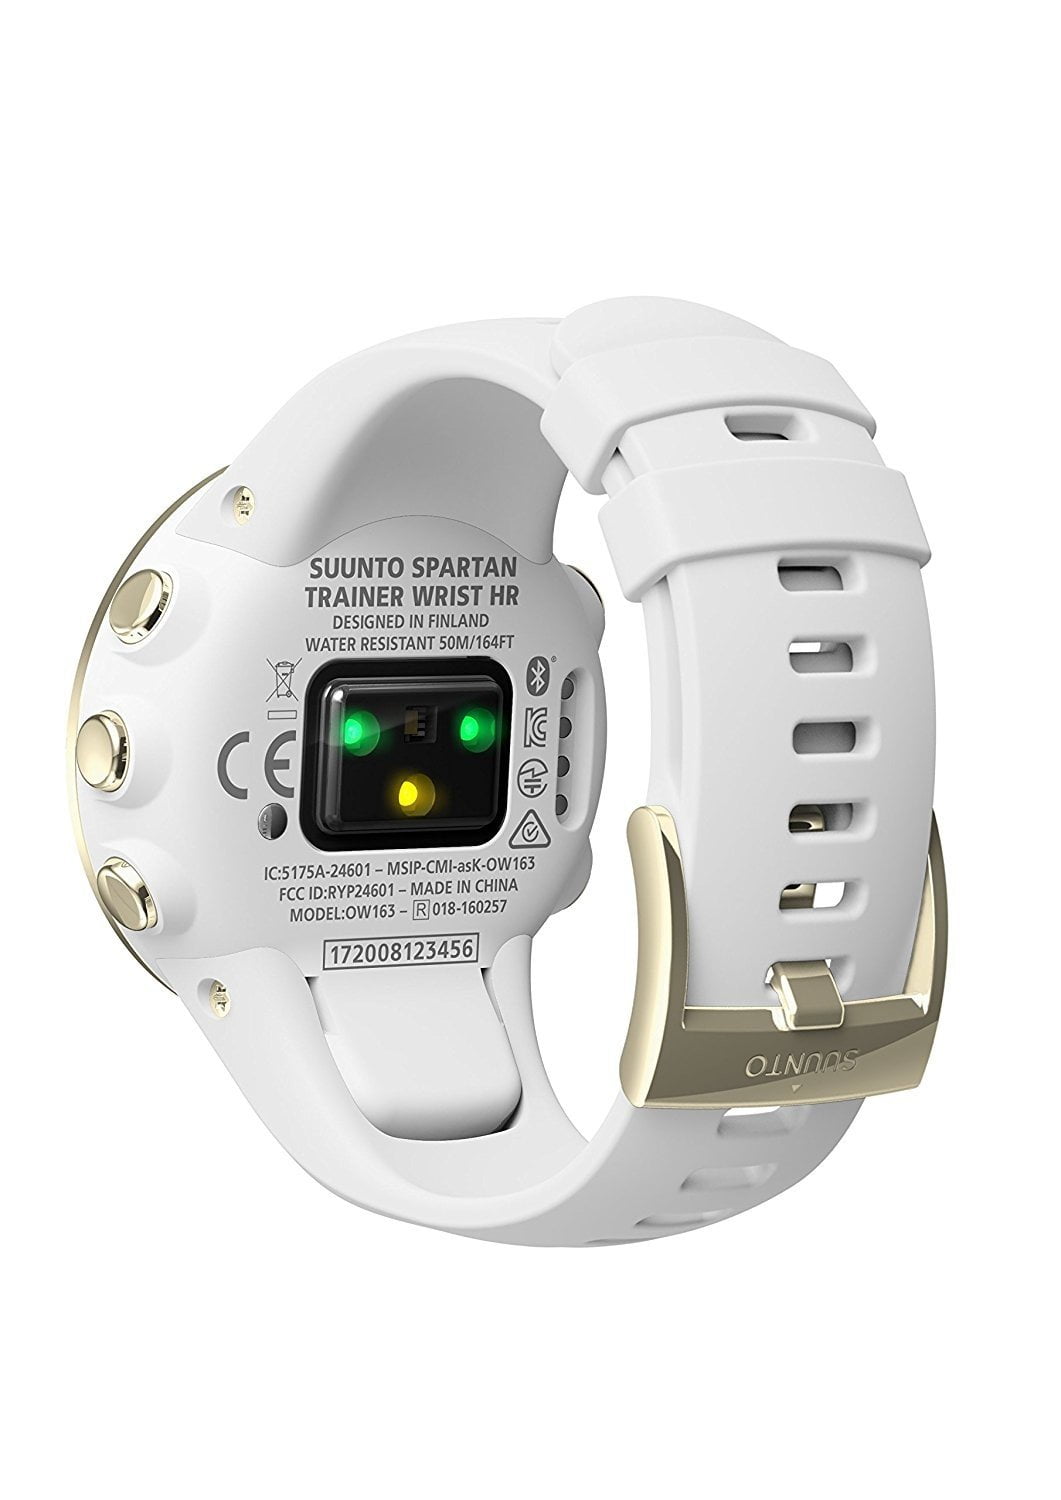 Suunto Spartan Trainer Wrist HR Steel Watch, White/Gold - Walmart.com